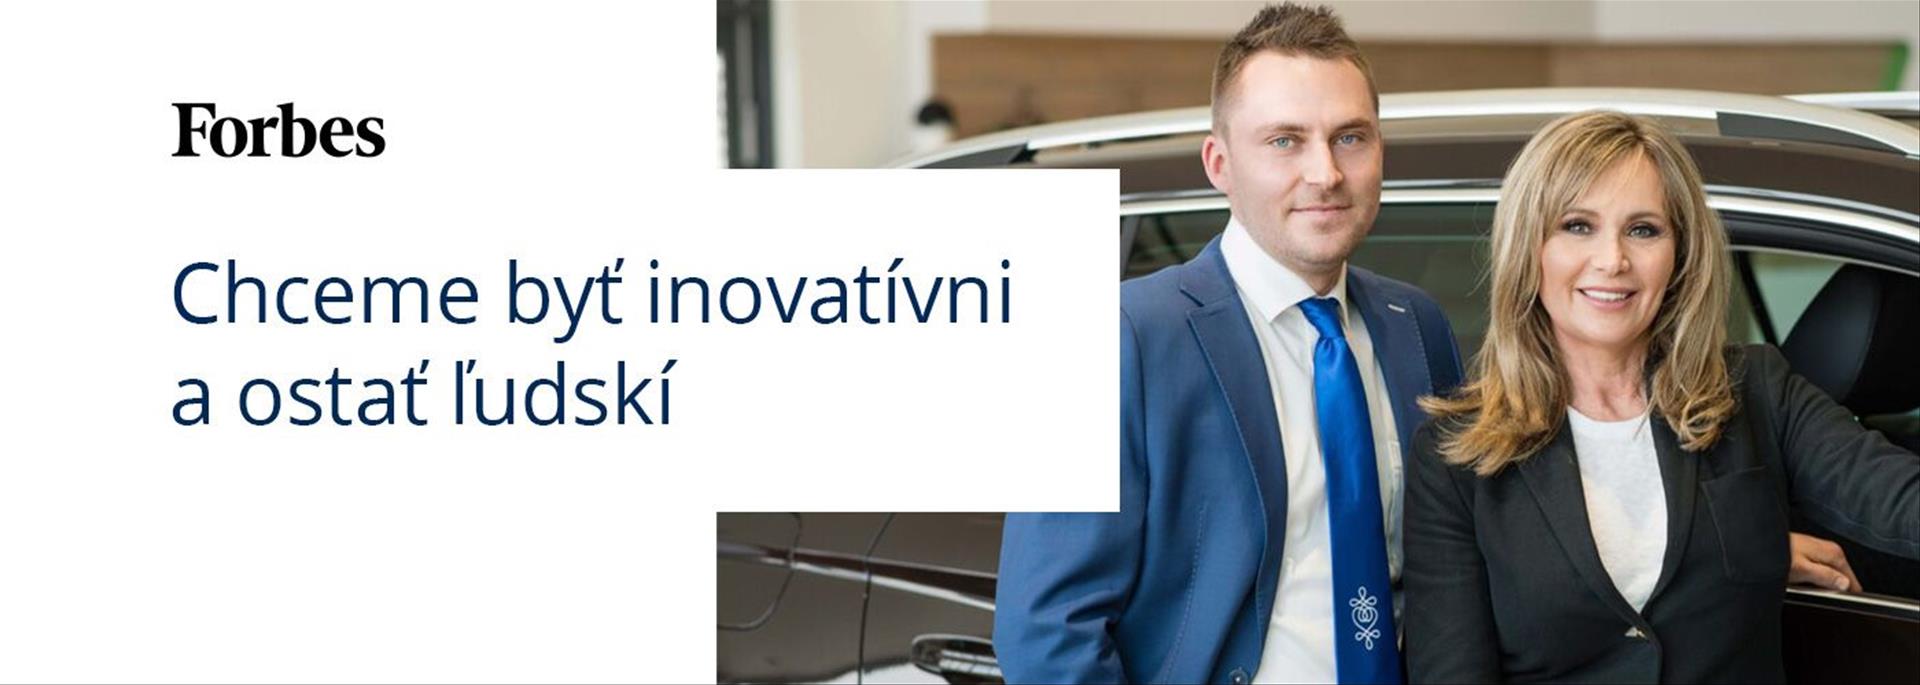 Autoprofit.sk  Rozhovor pre FORBES magazín : Chceme byť inovatívni